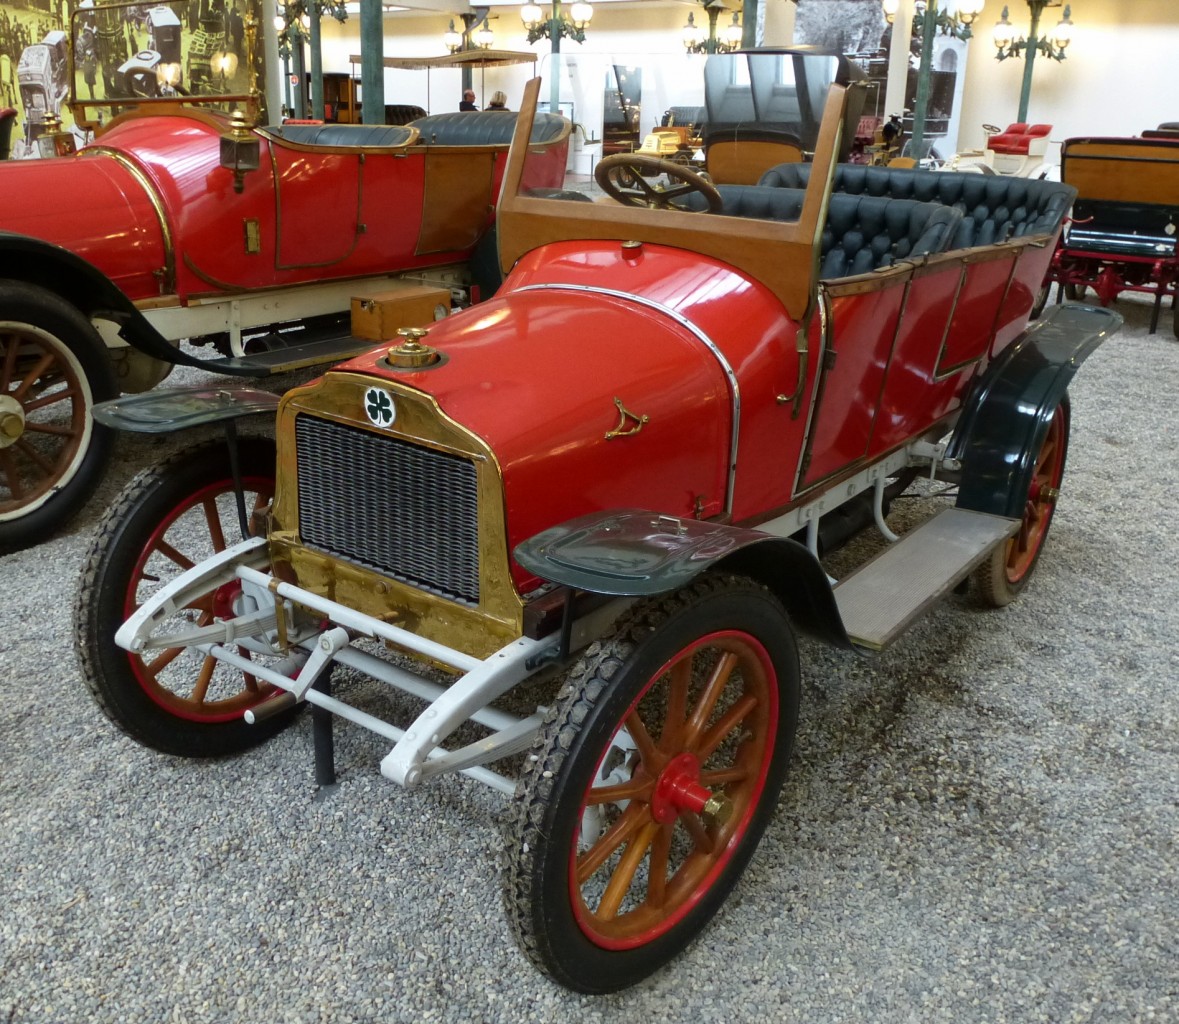 Richard-Brasier, franzsischer Oldtimer, Baujahr 1910, 2-Zyl.Motor mit 1205ccm und 8PS, Automobilmuseum Mlhausen, Nov.2013